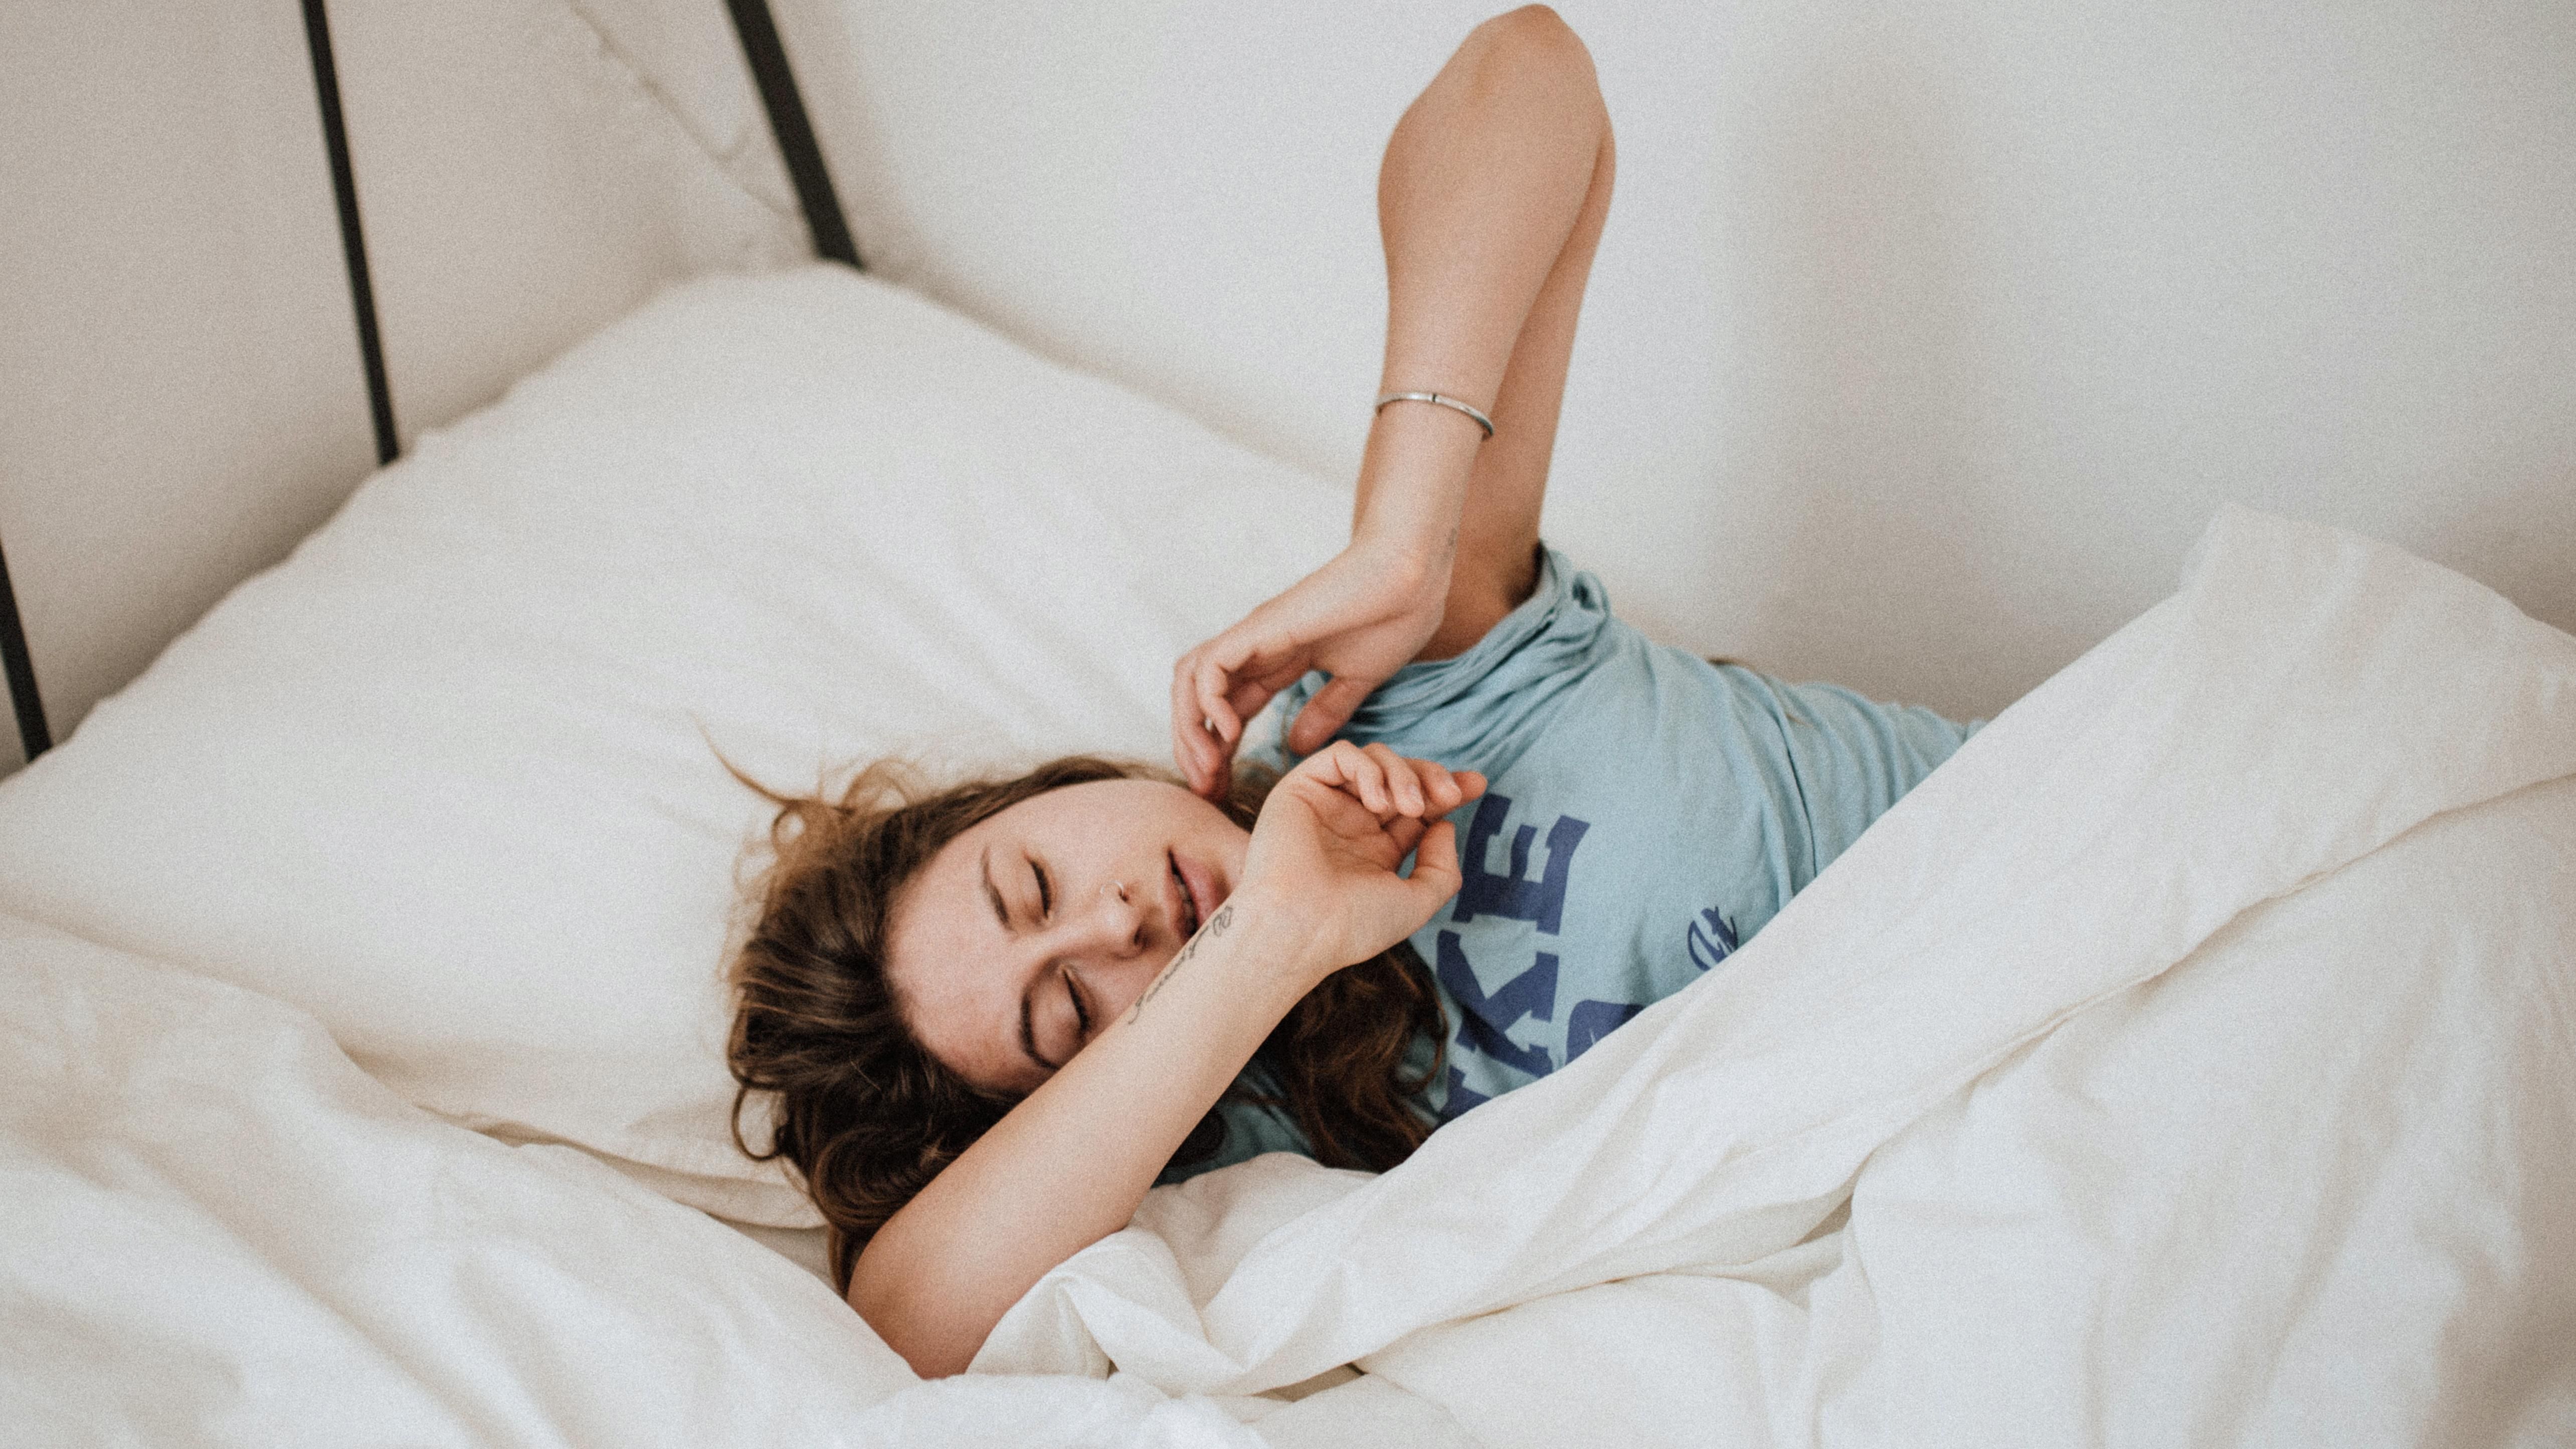 Как лечь спать вовремя - советы для полноценного сна